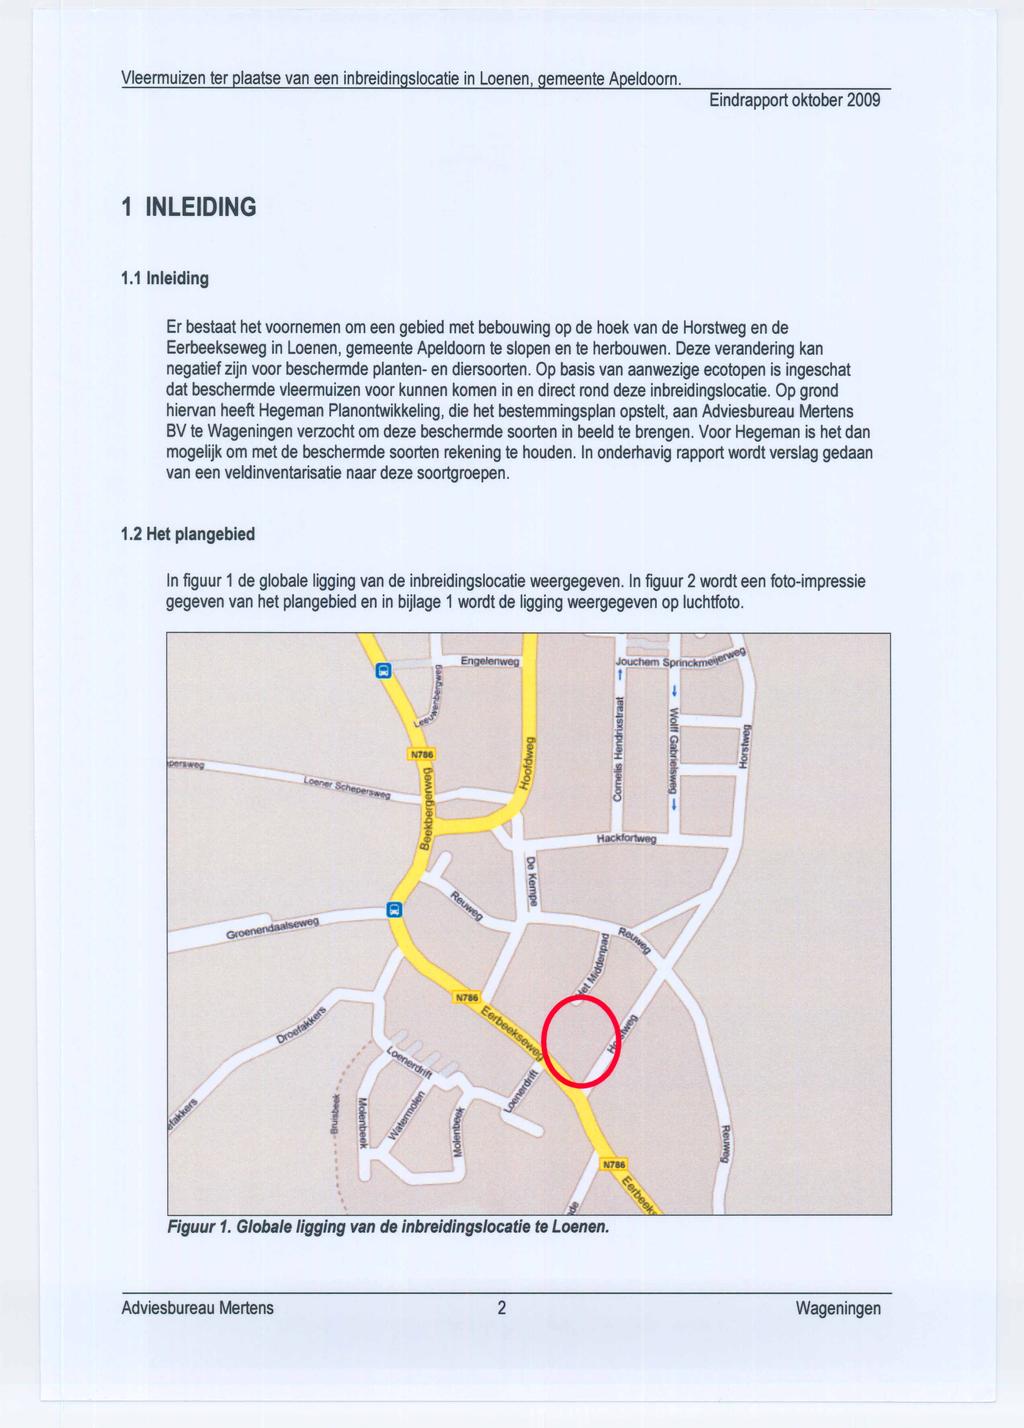 Er bestaat het voornemen om een gebied met bebouwing op de hoek van de Horstweg en de Eerbeekseweg in Loenen, gemeente Apeldoorn te slopen en te herbouwen.